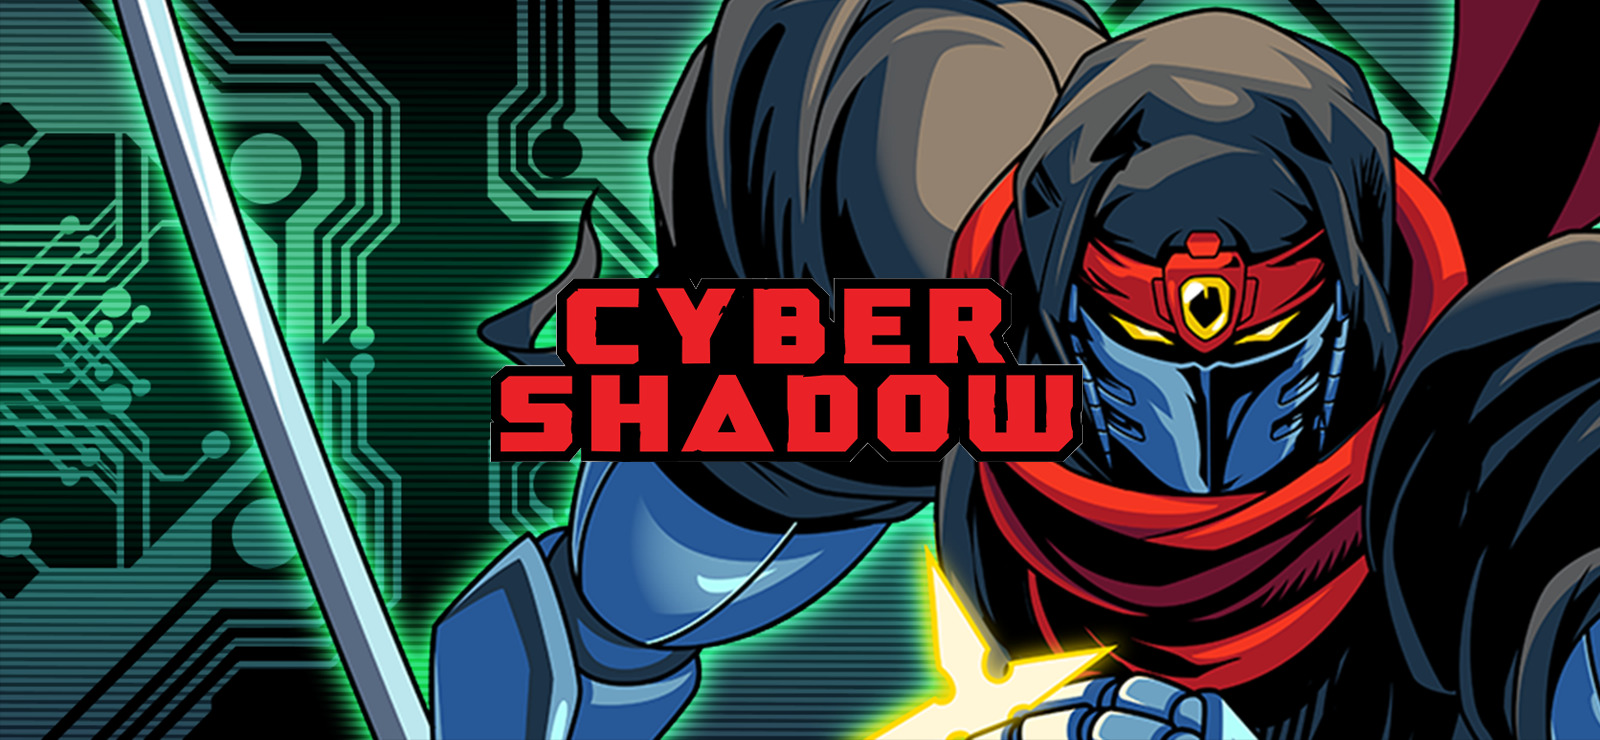 cyber shadow release date